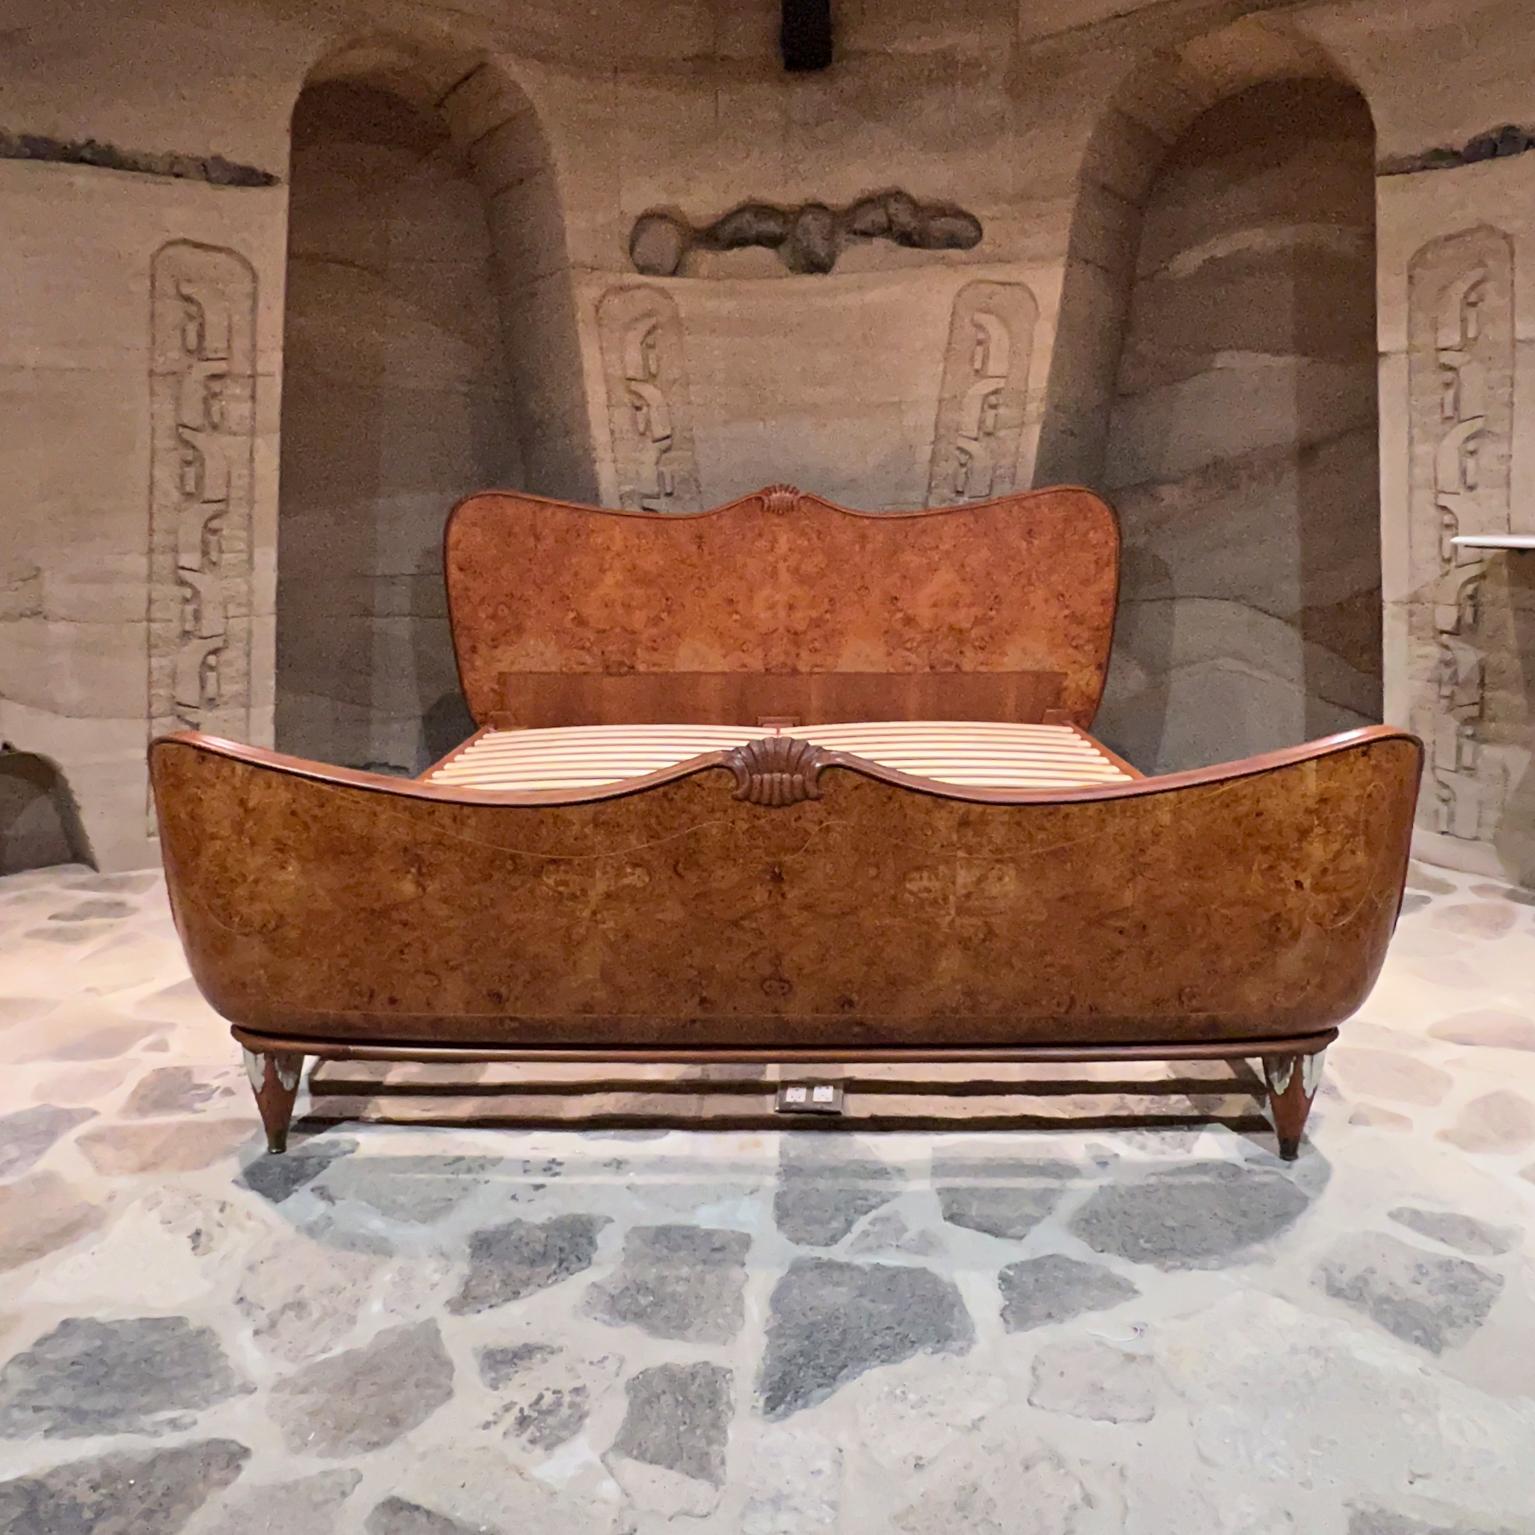 1930er Jahre Art Deco Italienisch König Bett skulpturale Swag Wurzelholz
Exquisite, detailreiche Holzeinlegearbeiten
Osvaldo Borsani zugeschrieben
43 hoch x 83,75 breit x 99 tief 
Fußteil 27,5 hoch 75,25 breit
Matratzenfläche 73,5 x 84
Passend für